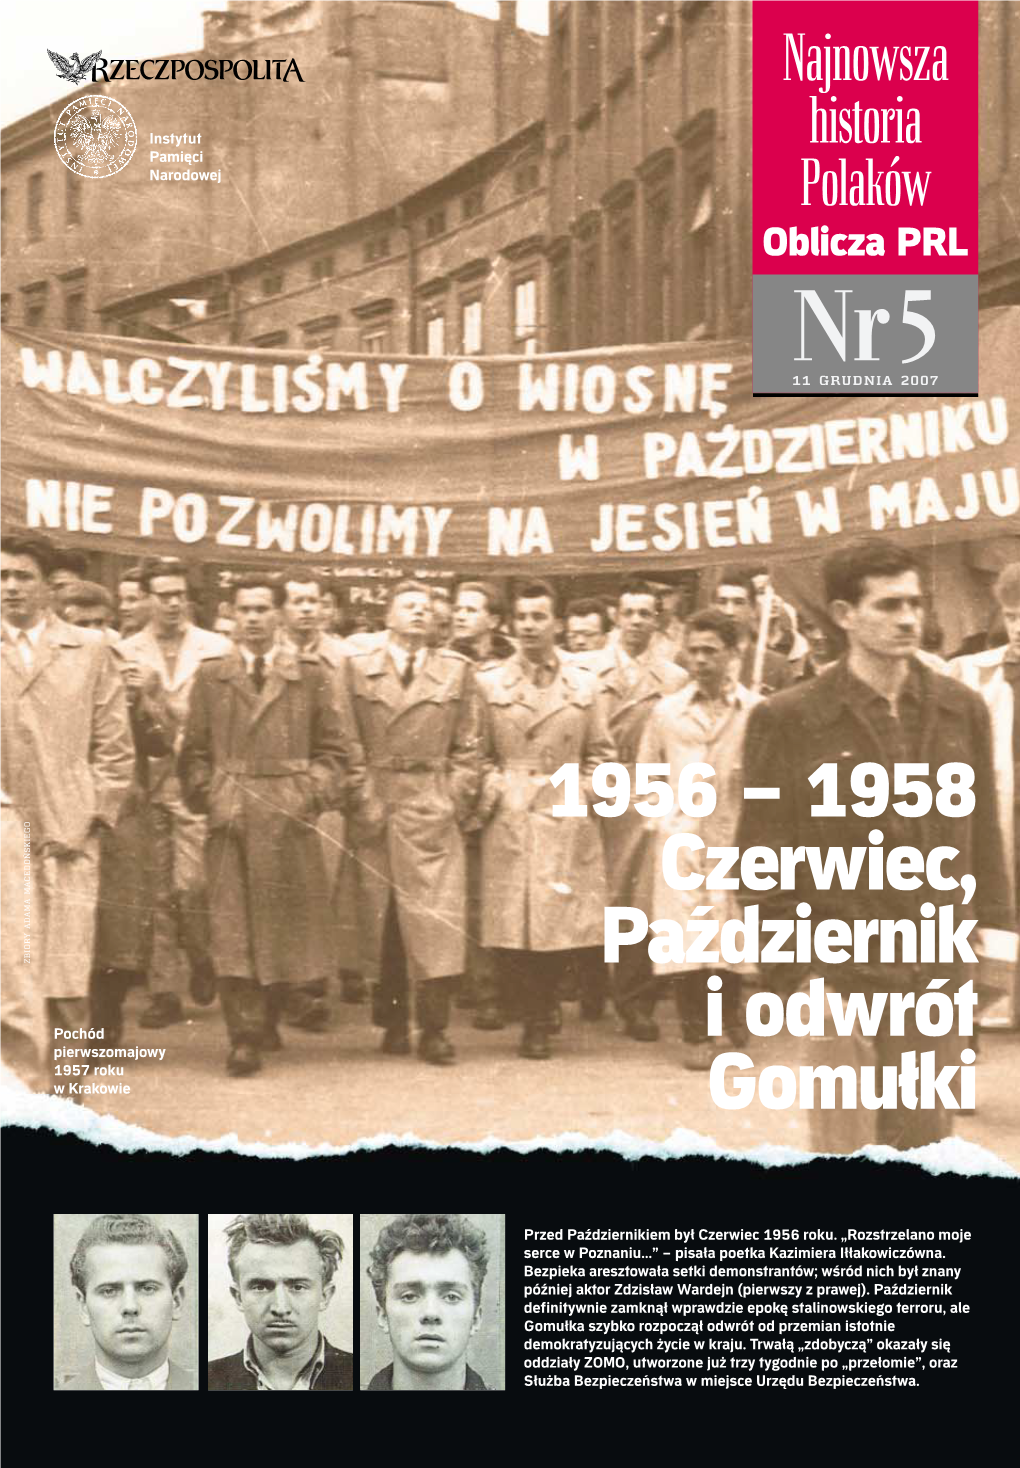 1956 – 1958 Czerwiec, Październik I Odwrót Gomułki